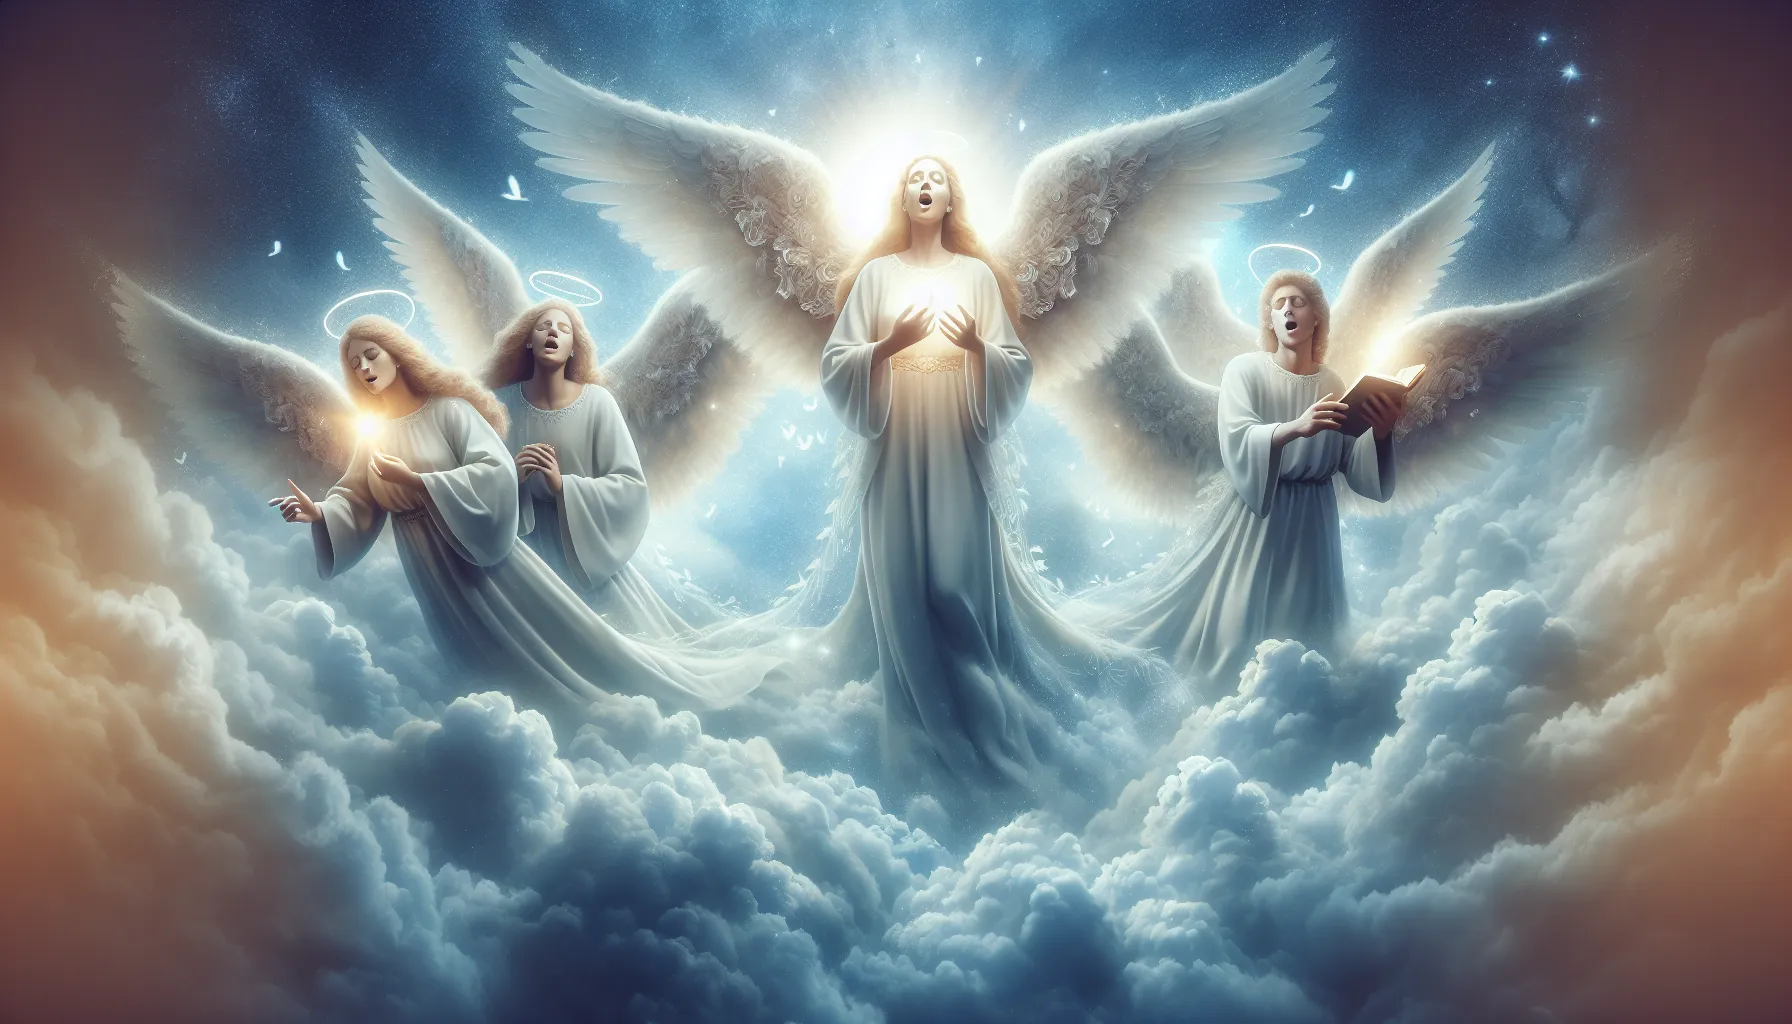 Imagen de Ángeles rodeados de luz celestial y cantando en el cielo mientras transmiten paz y armonía.